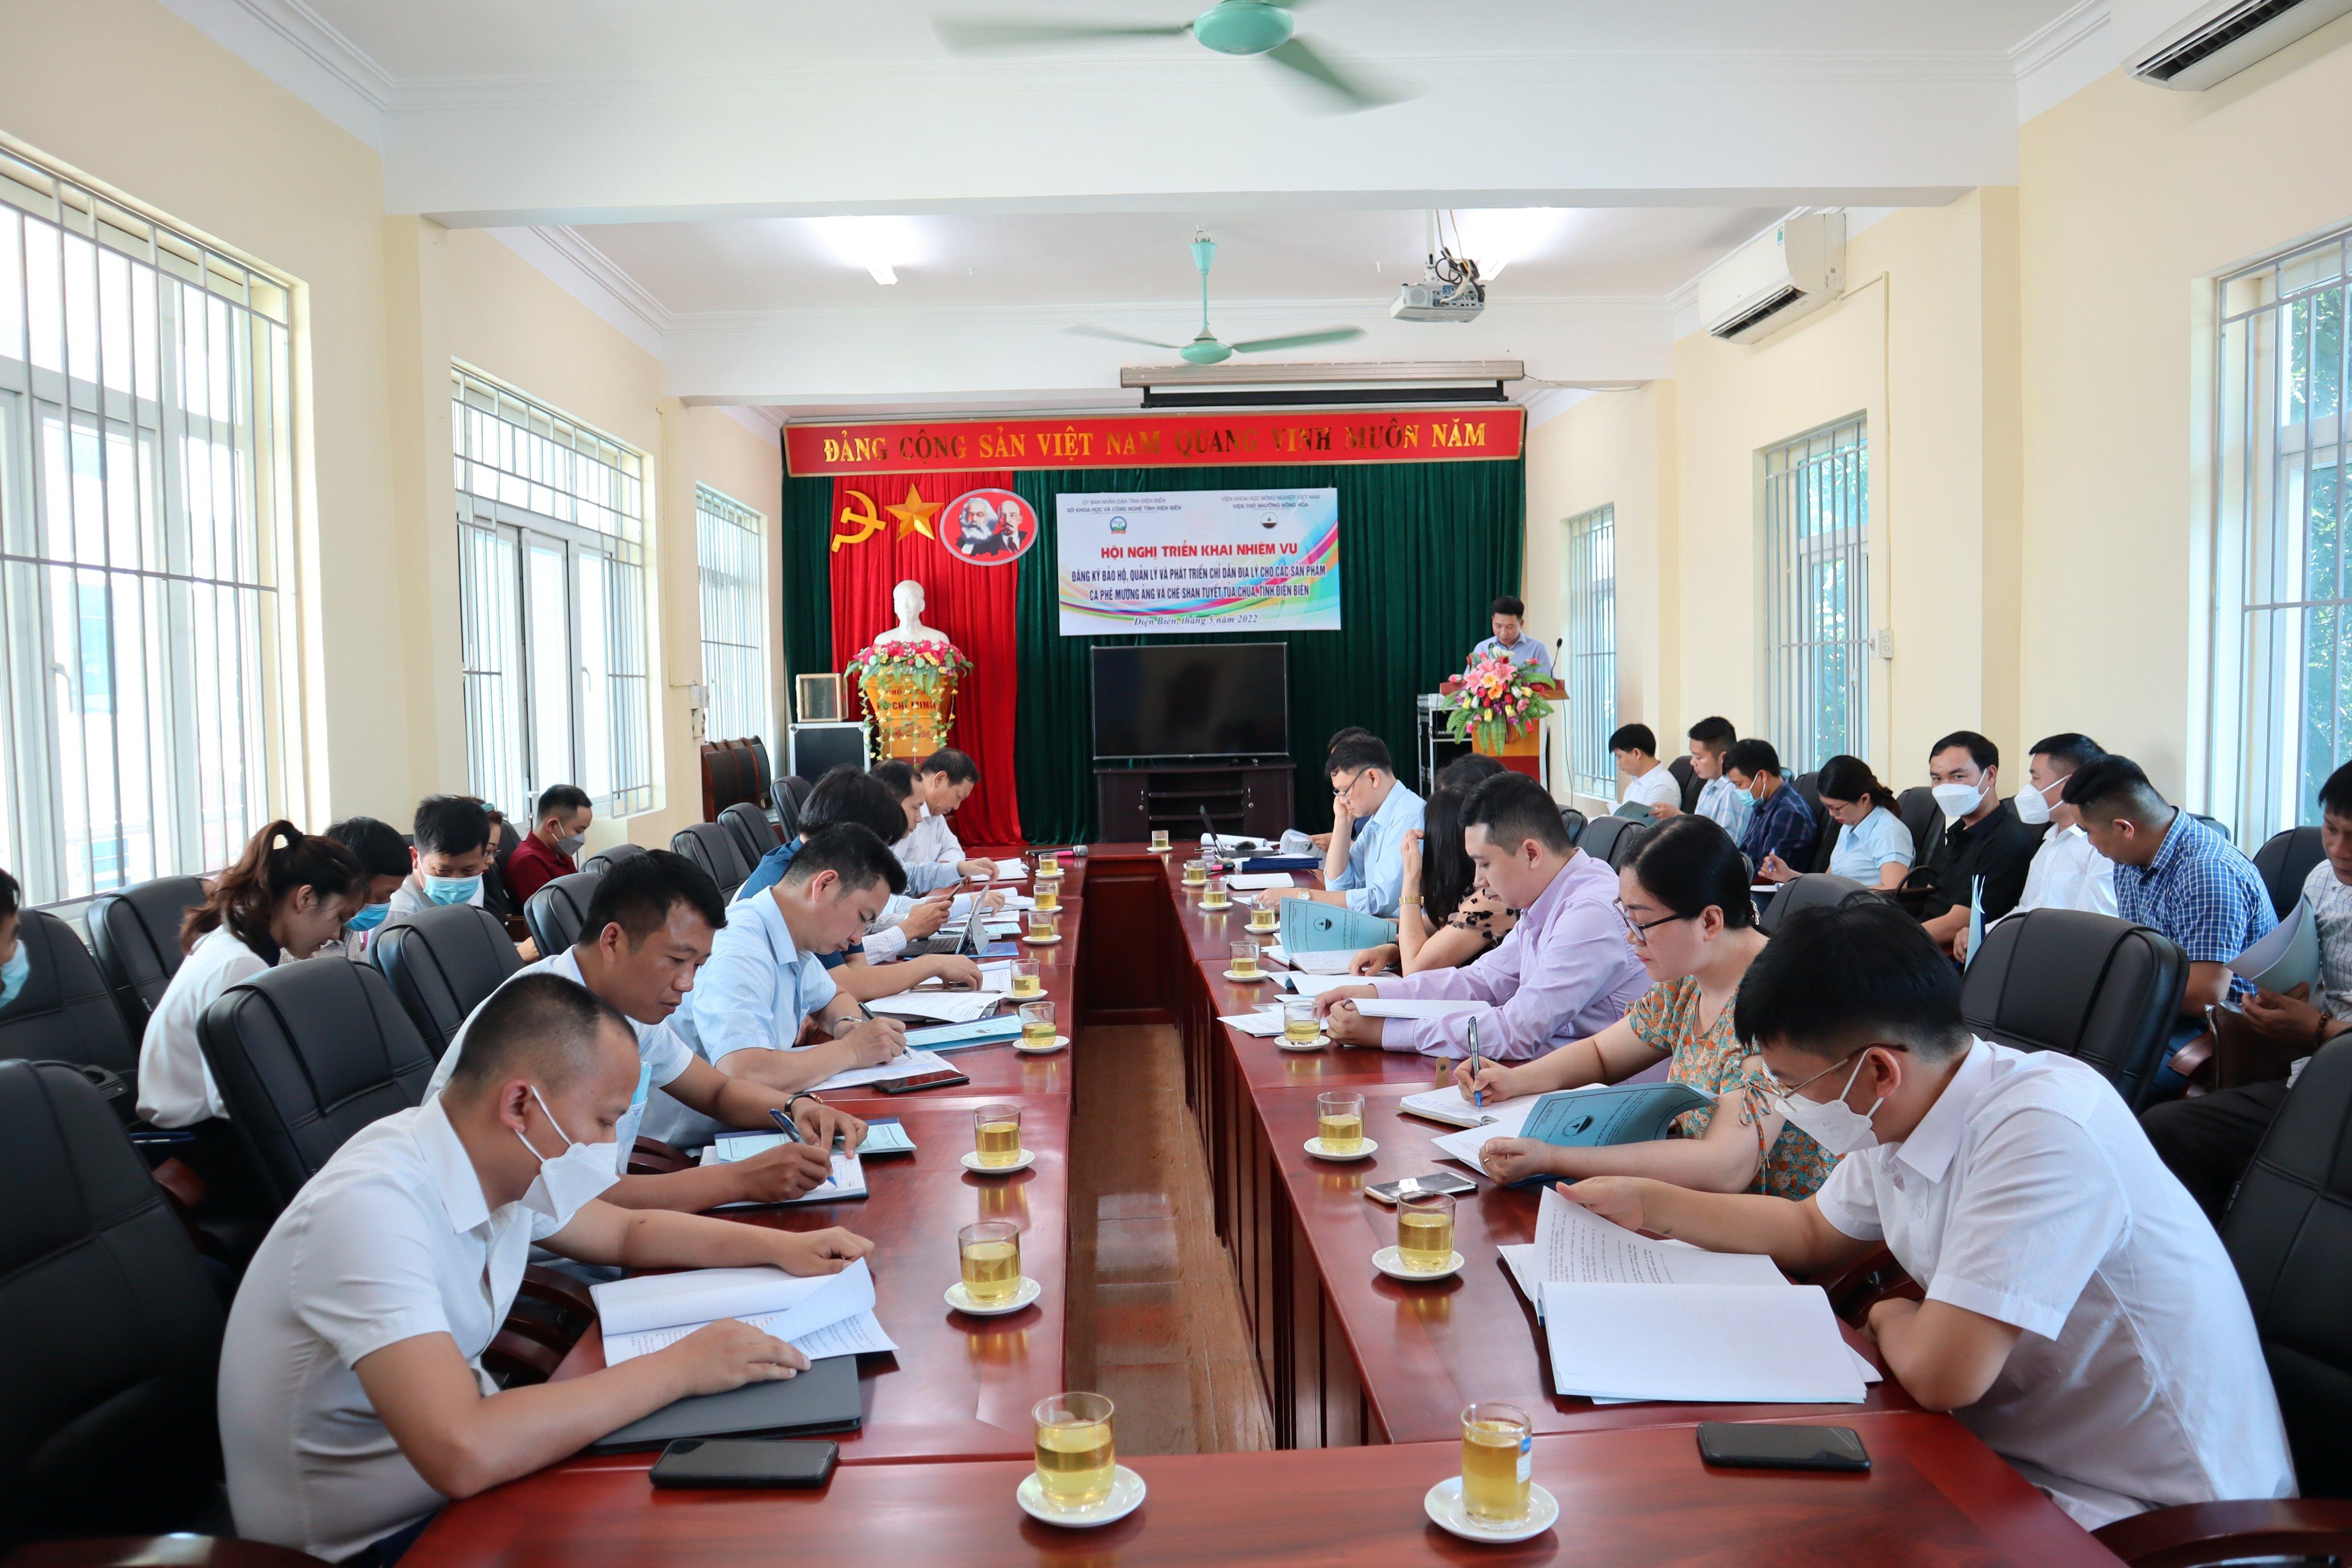 Khởi động nhiệm vụ CDĐL cho các sản phẩm cà phê Mường Ảng và chè Shan tuyết Tủa Chùa, tỉnh Điện Biên’